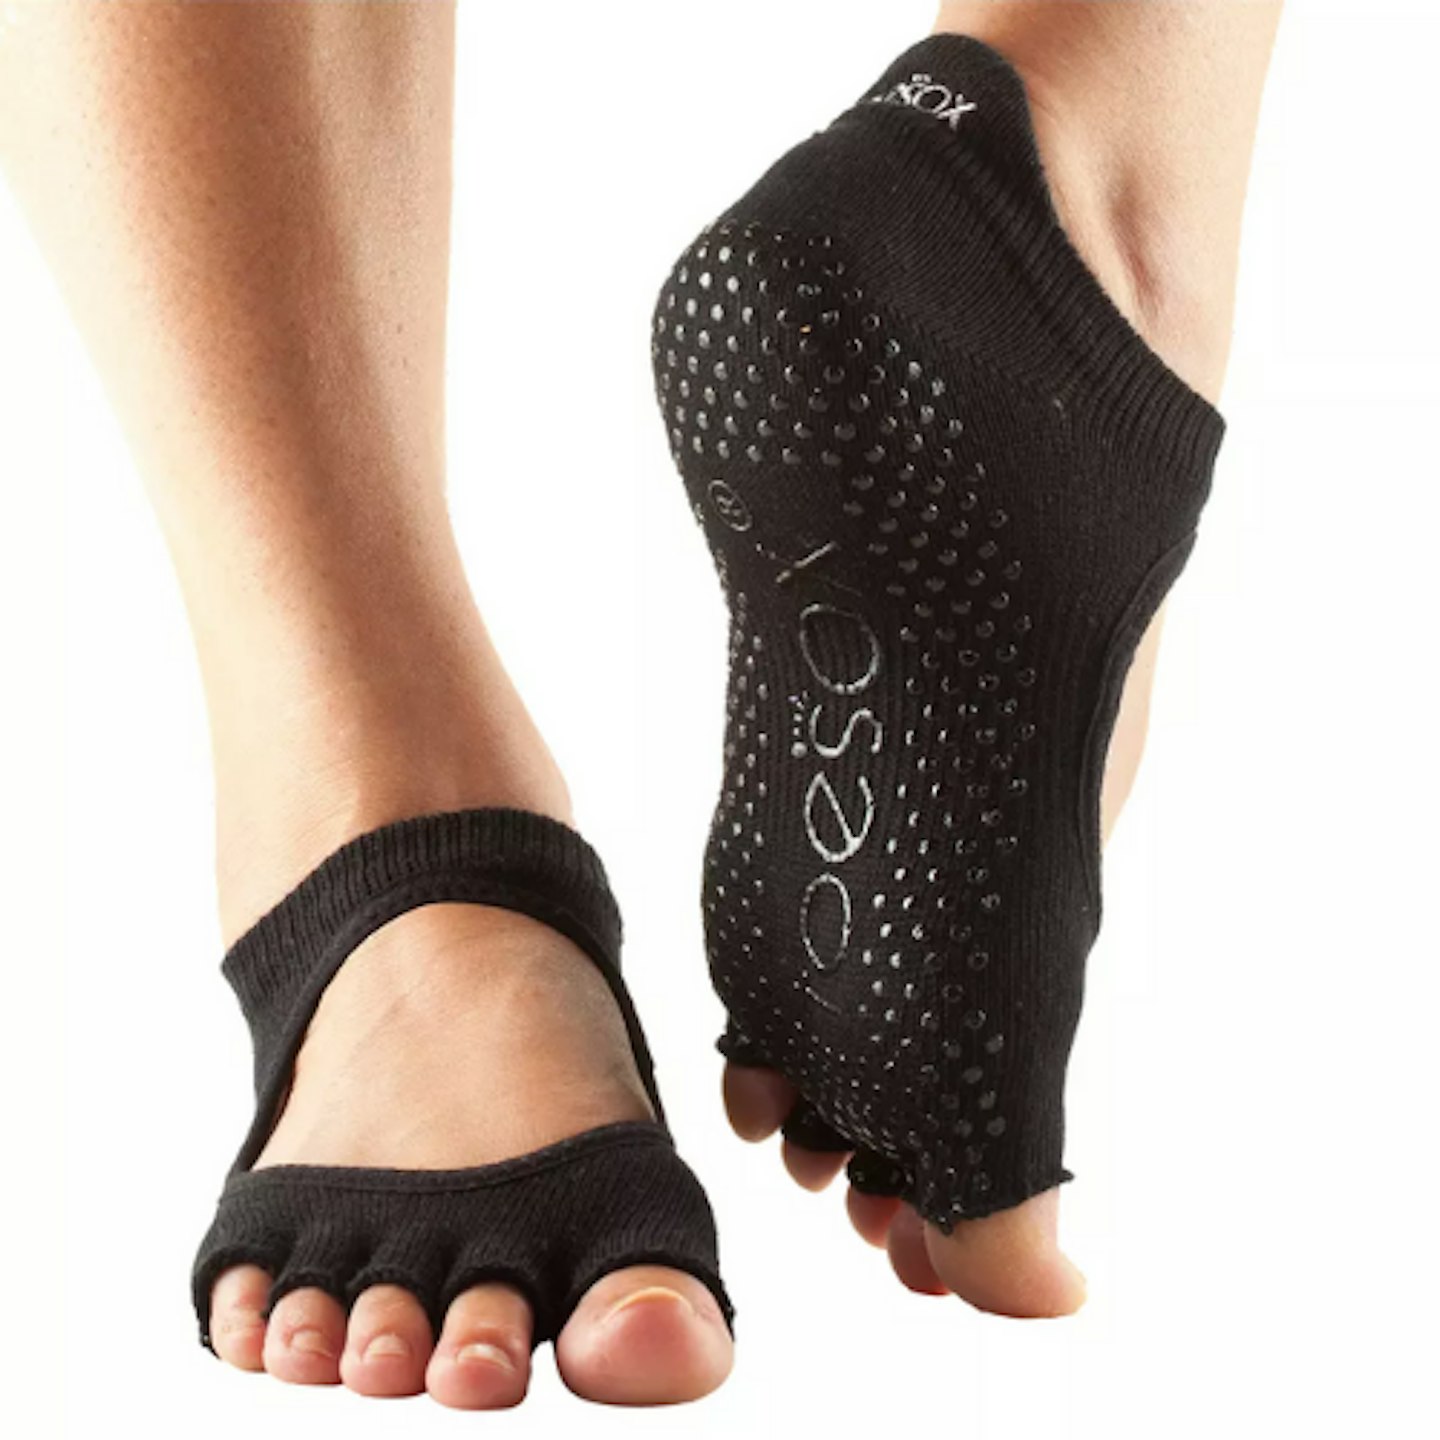 6 Pairs Non Slip Half Toe Yoga Socks for Ballet, Yoga, Pilates